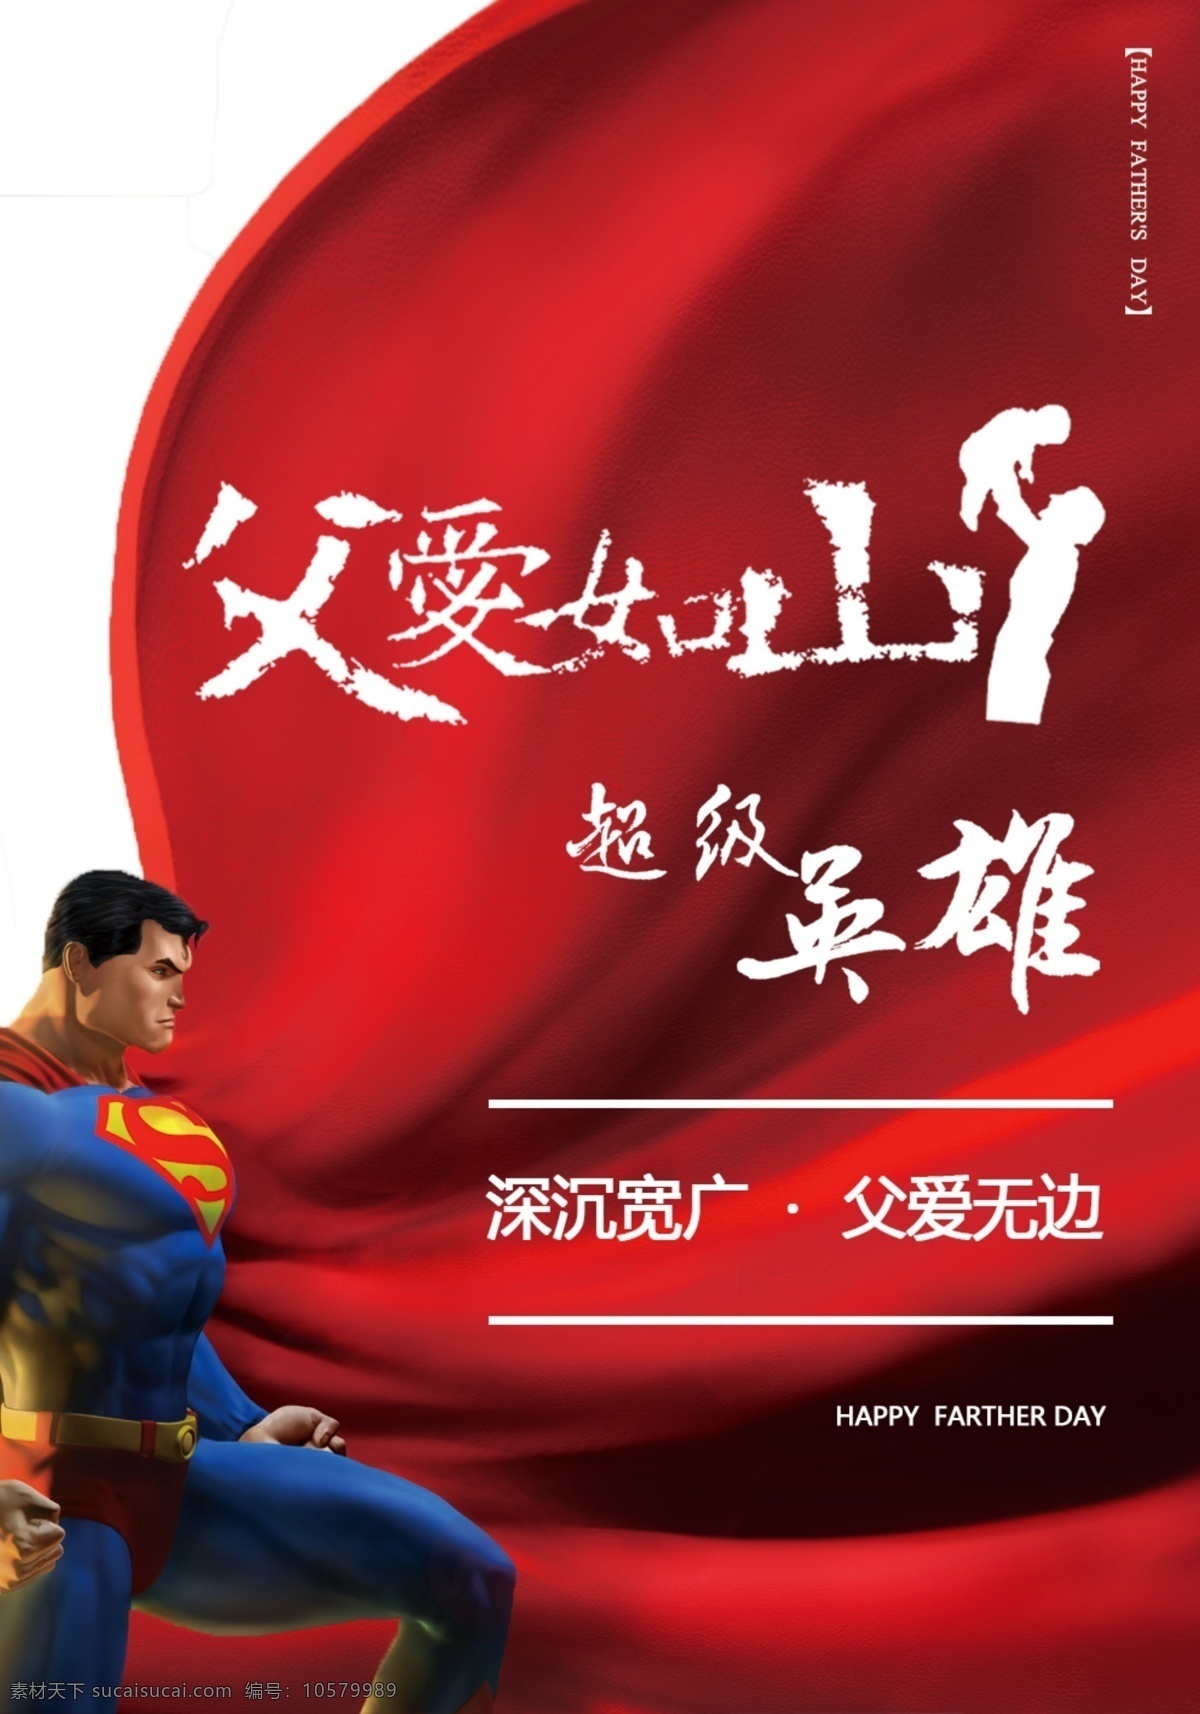 父亲节 快乐 海报 父亲节快乐 父亲节海报 父爱如山 超级英雄 父爱无边 促销 超人海报 超人素材 红色 超人